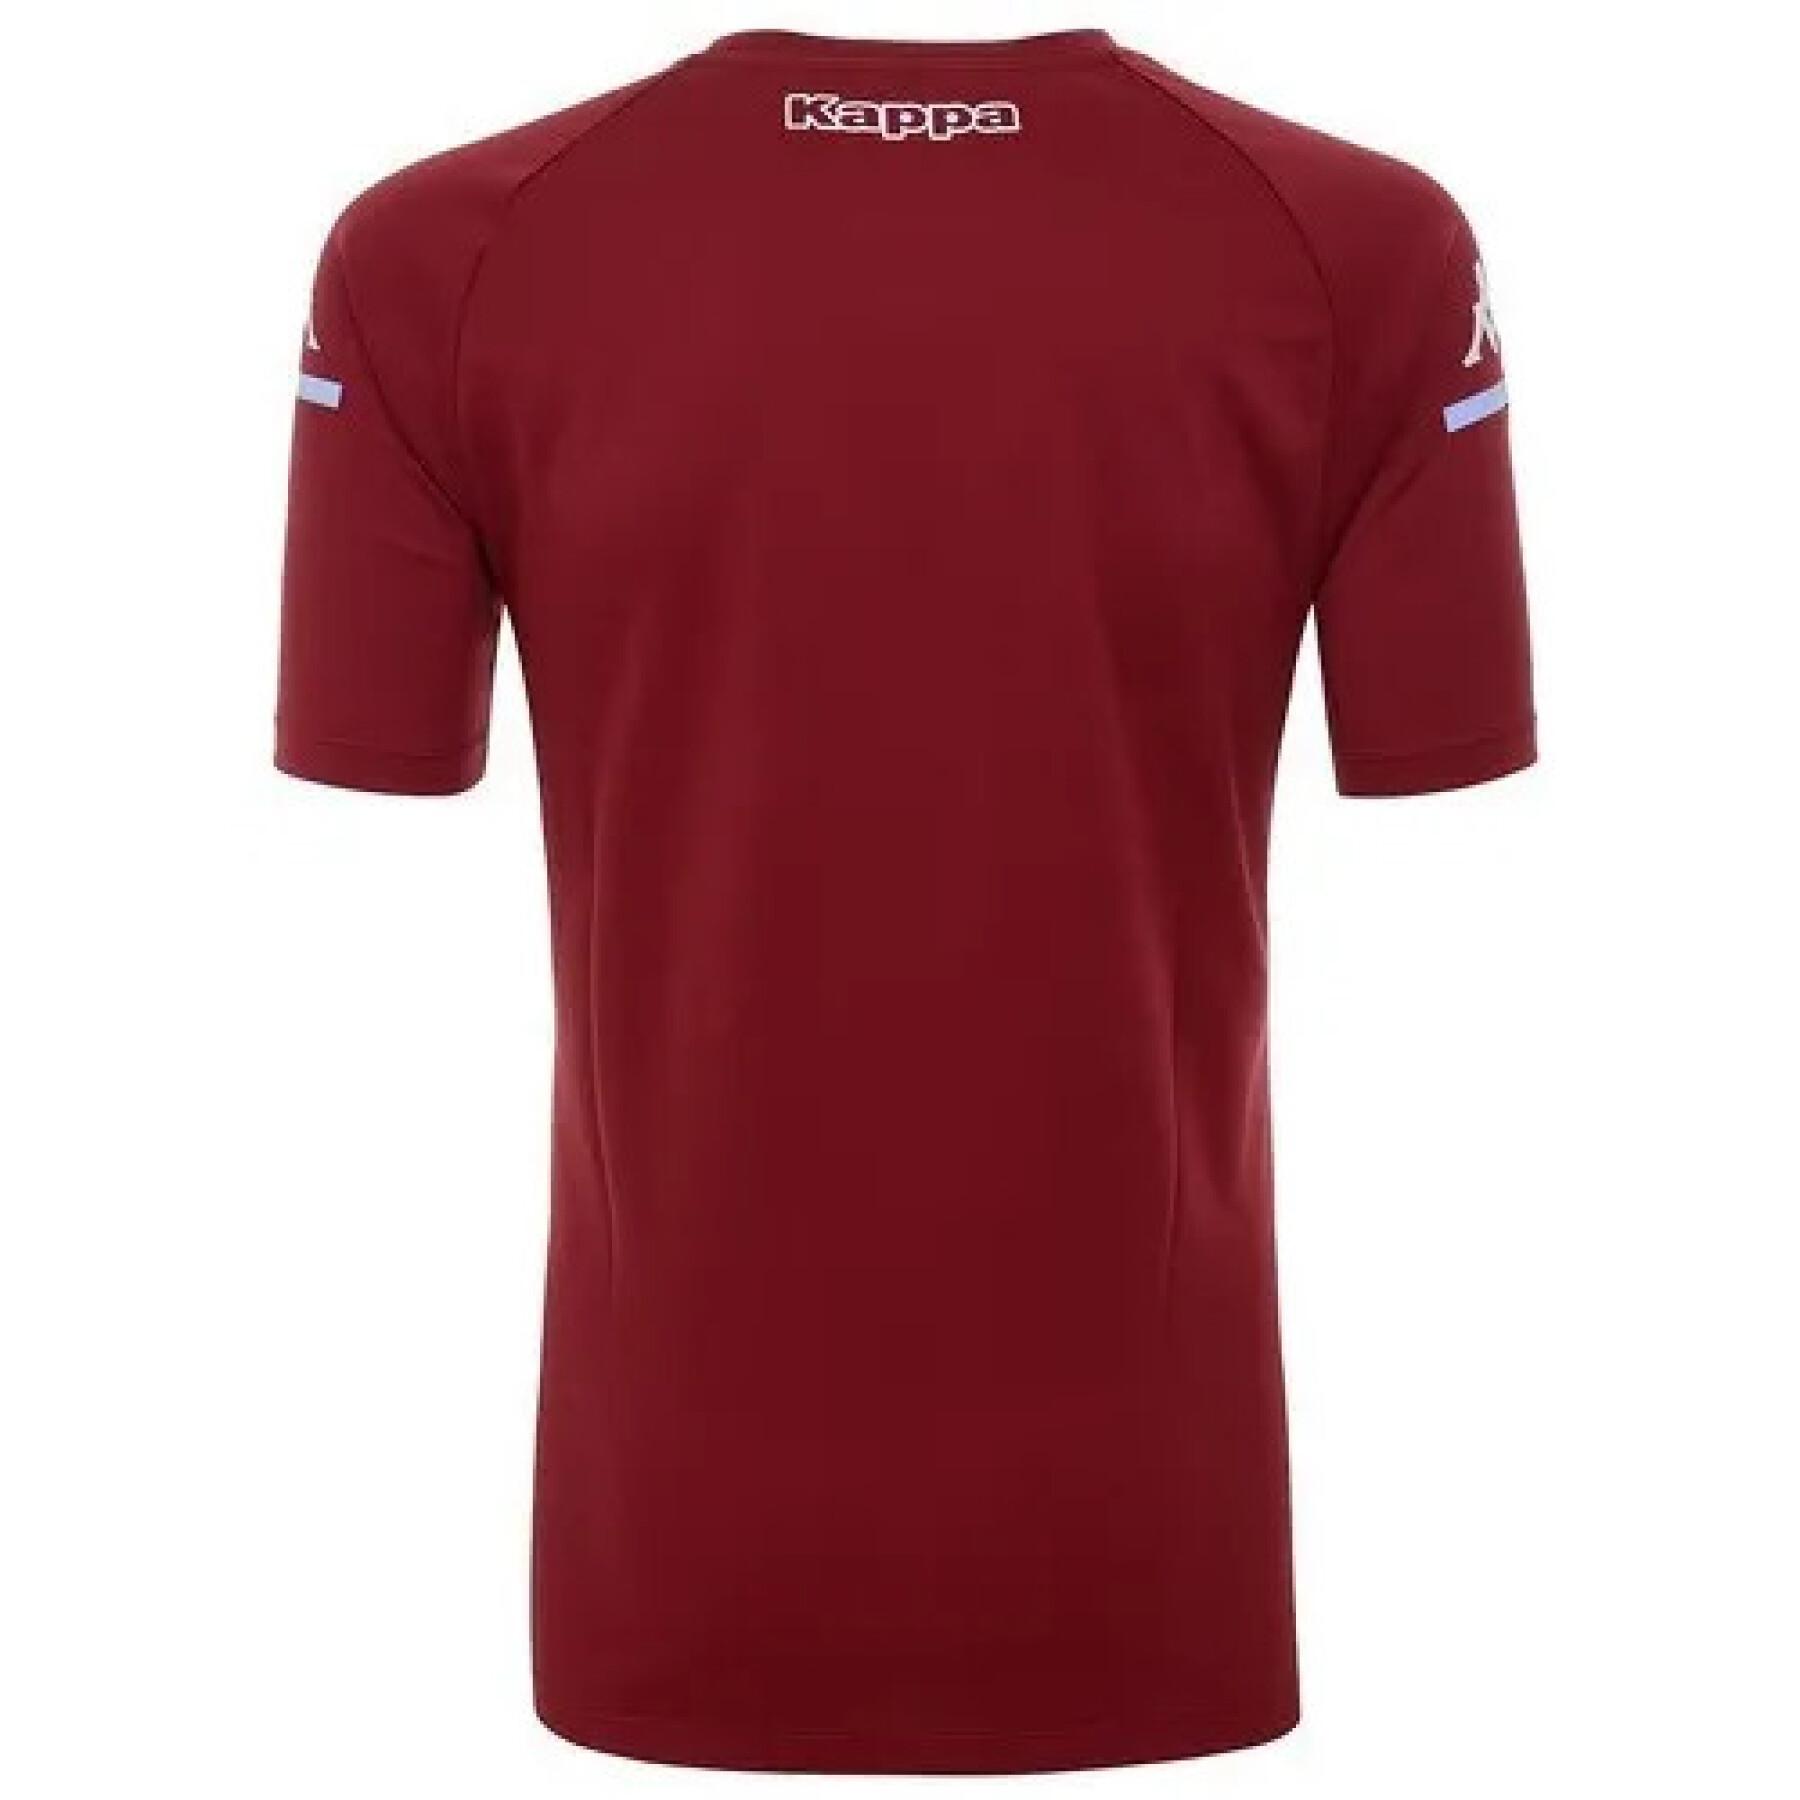 Koszulka Aston Villa FC 2020/21 aboupres pro 4